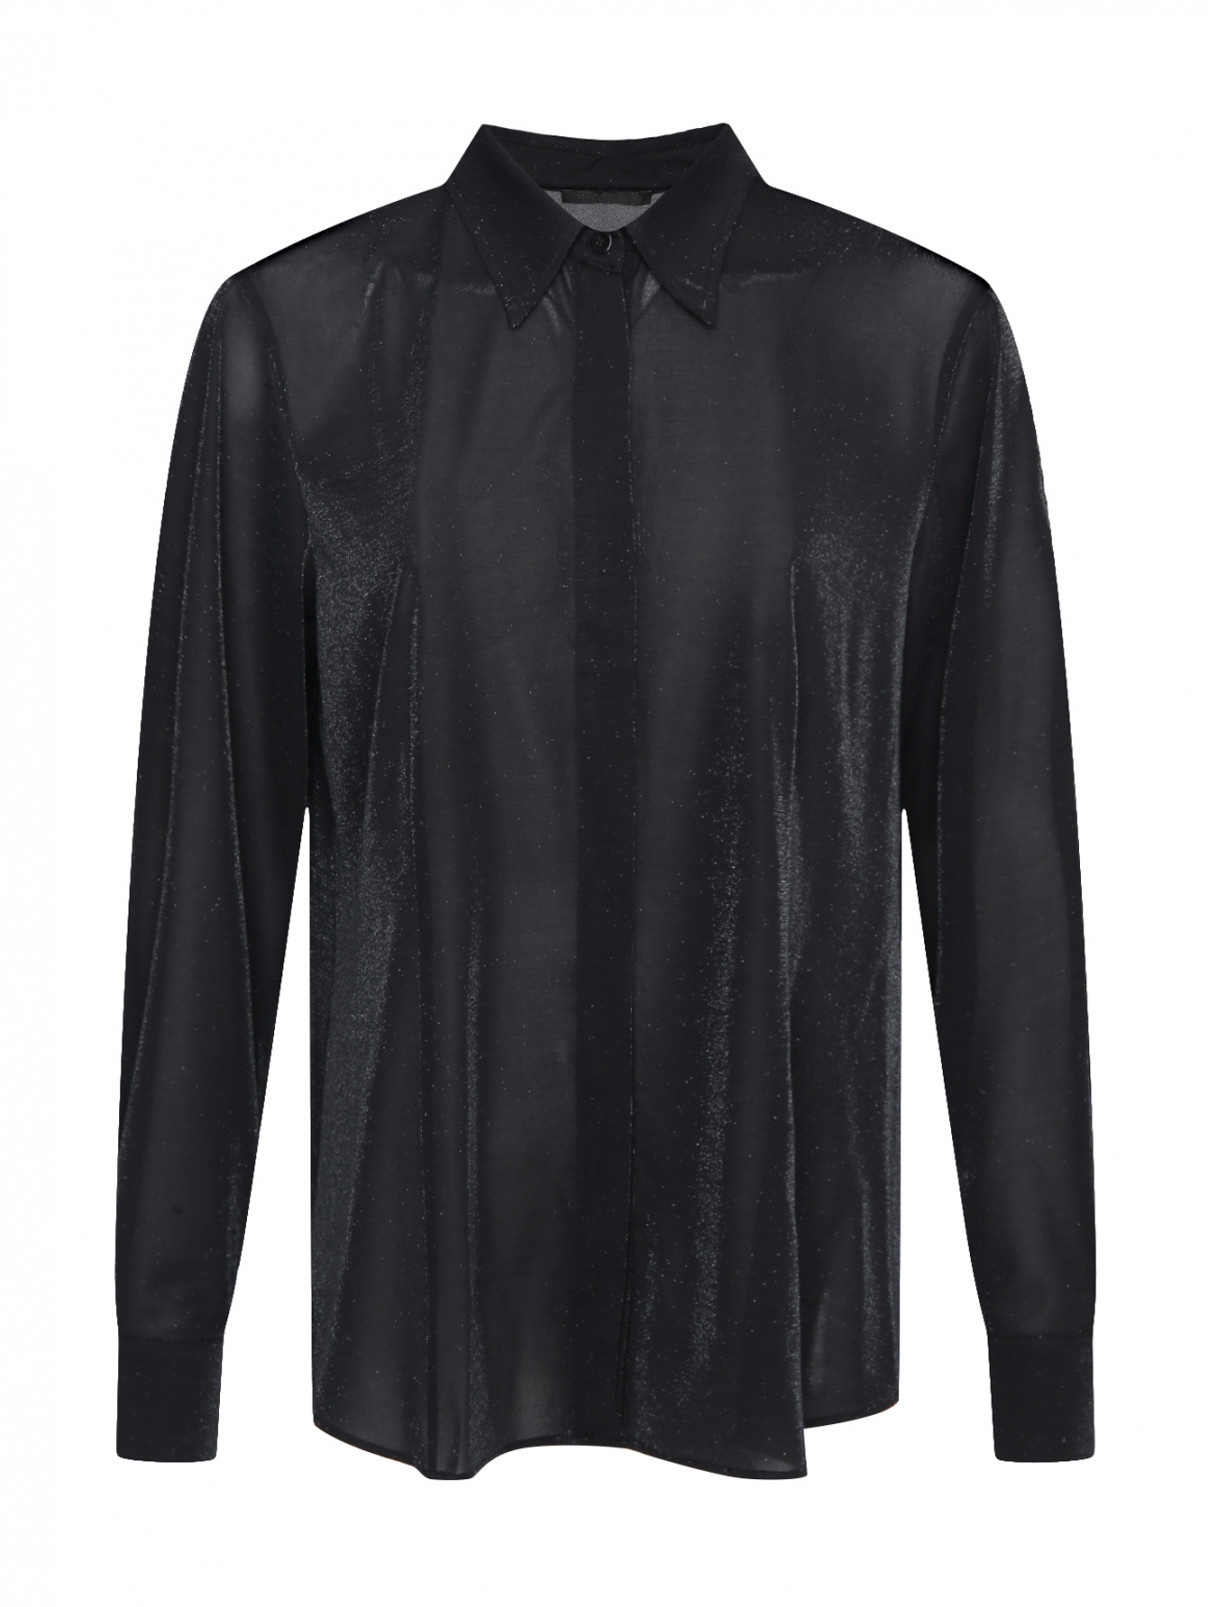 Рубашка трикотажная с металлической нитью Marina Rinaldi  –  Общий вид  – Цвет:  Черный